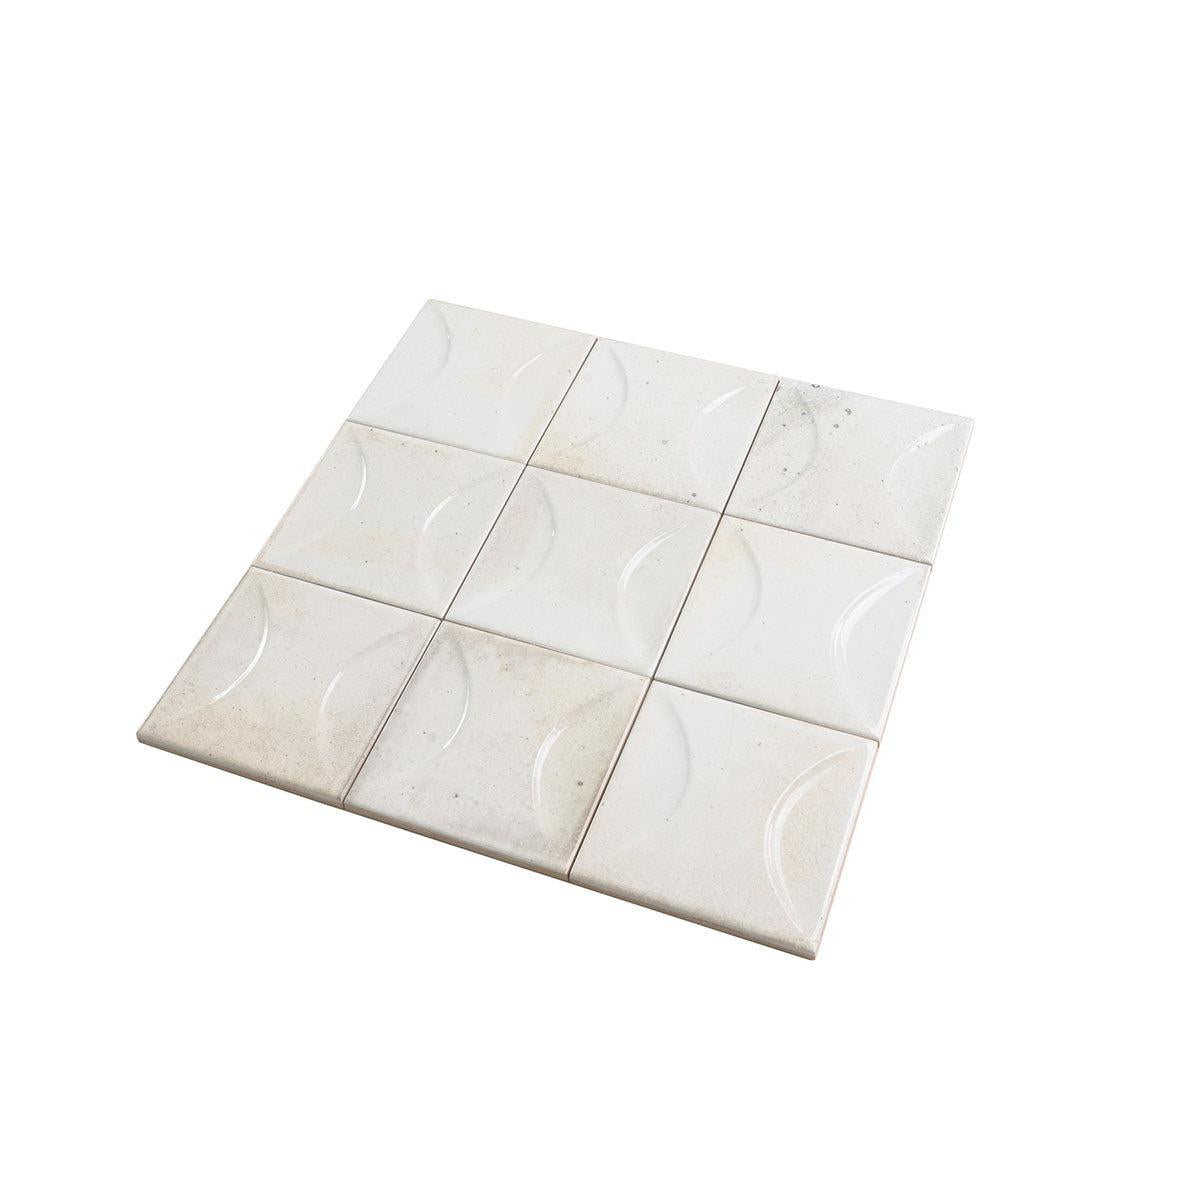 Luna Arc White 4x4 Ceramic Square Tiles